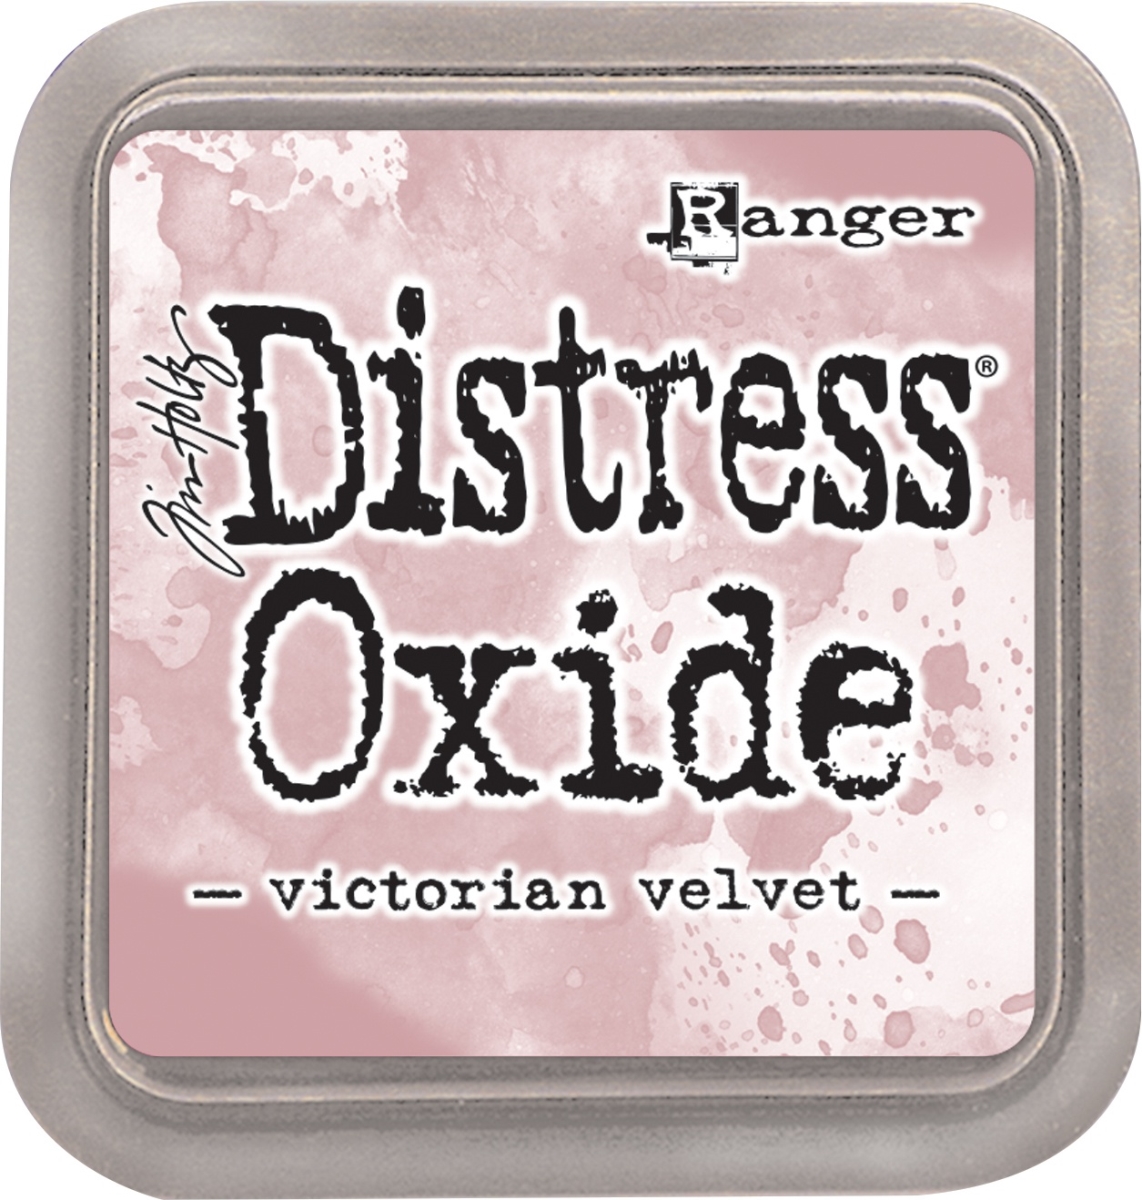 Tdo-56300 Tim Holtz Distress Oxides Ink Pad, Victorian Velvet